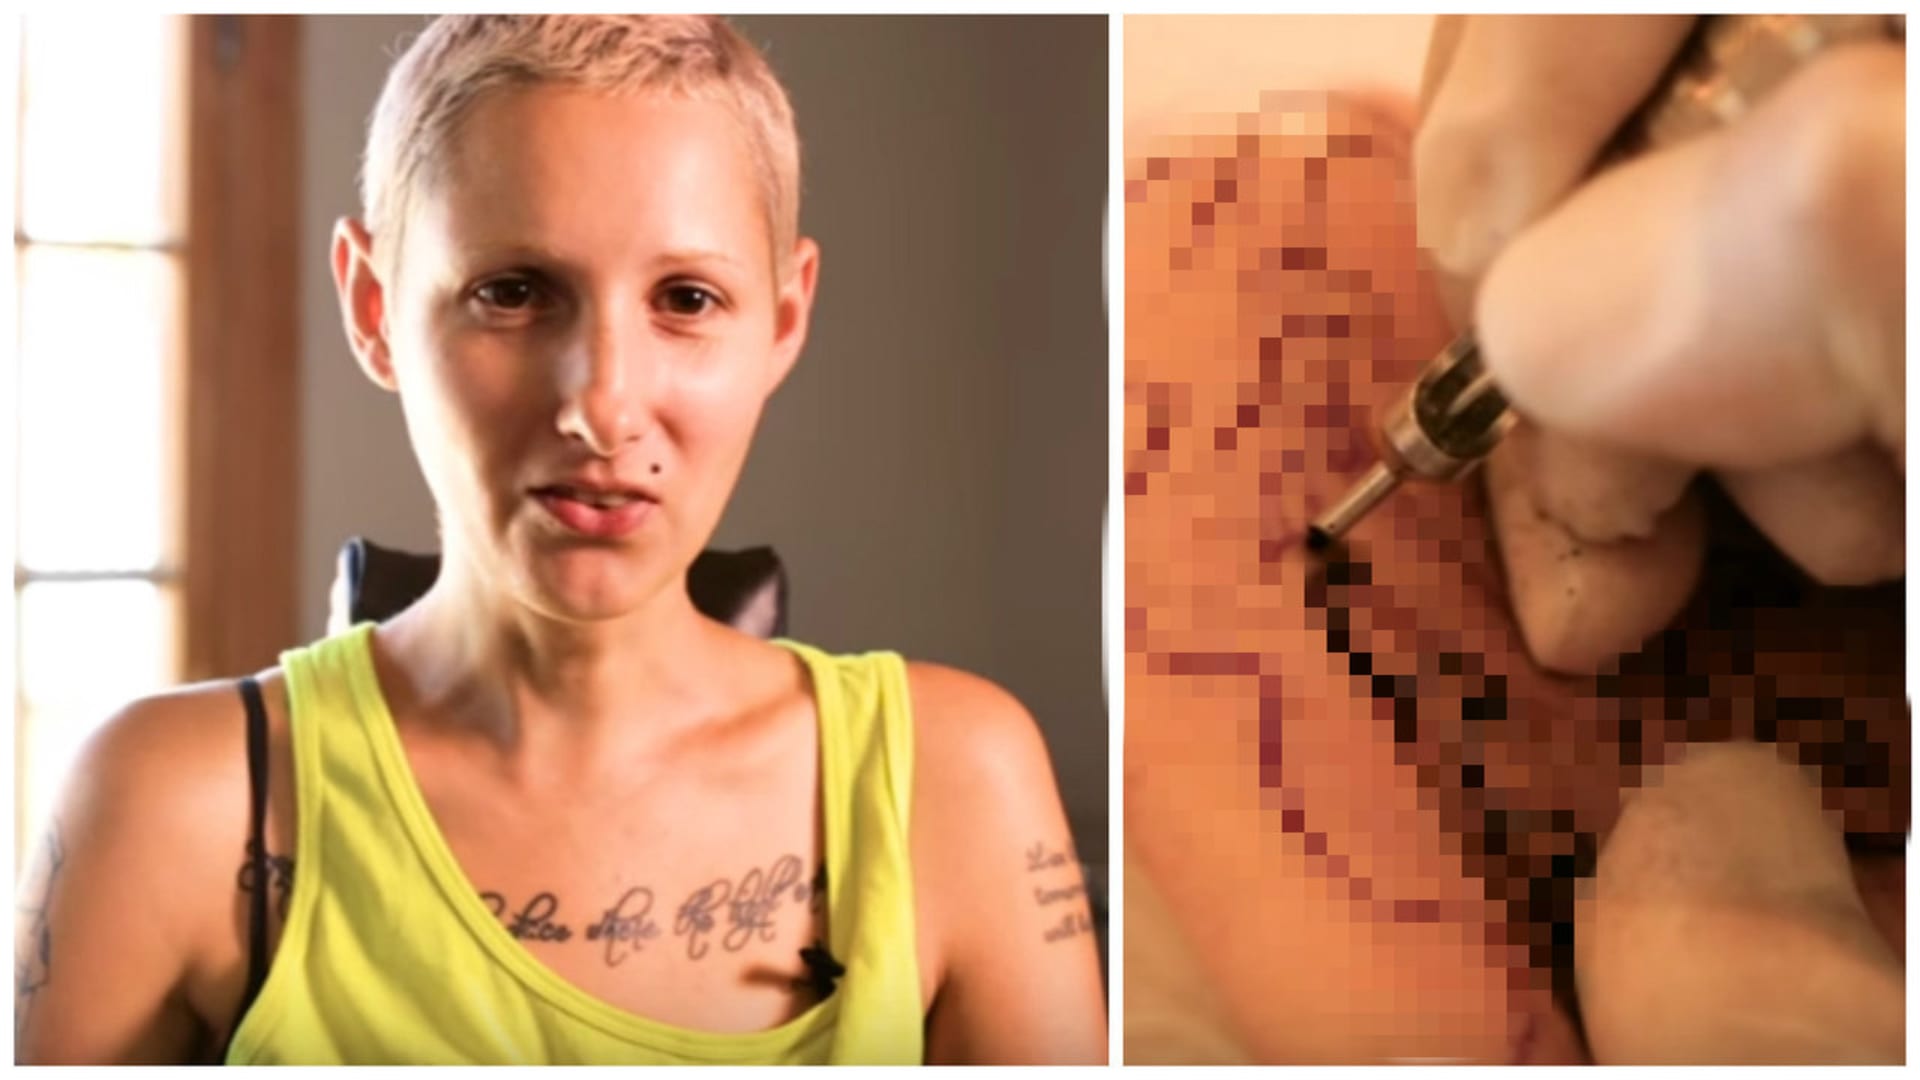 Nechala lidi vybrat jí tetování.